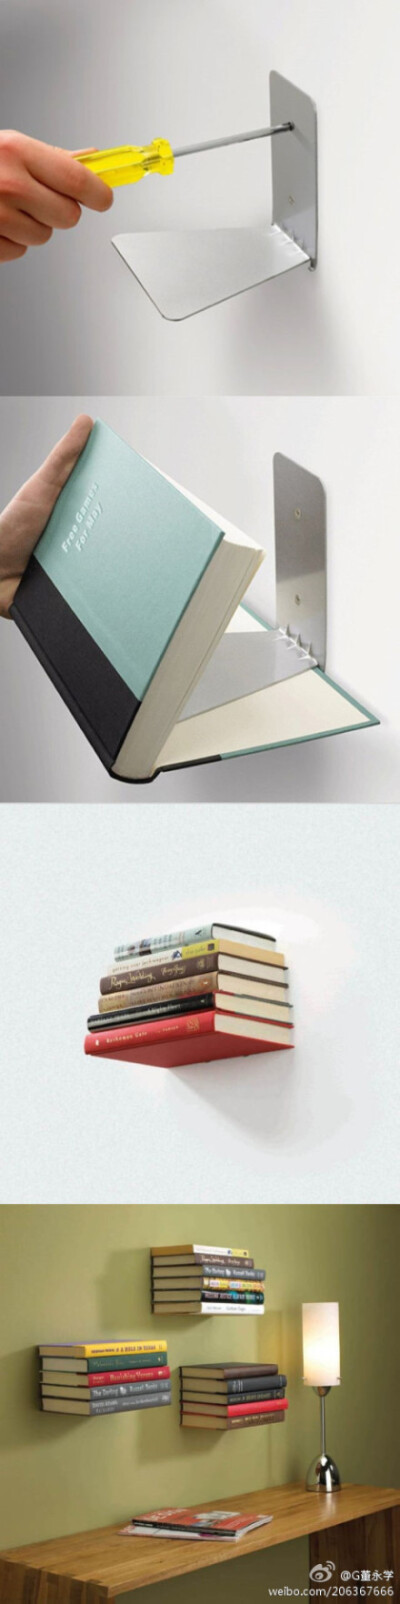 家居品牌Umbra设计出的隐形书架